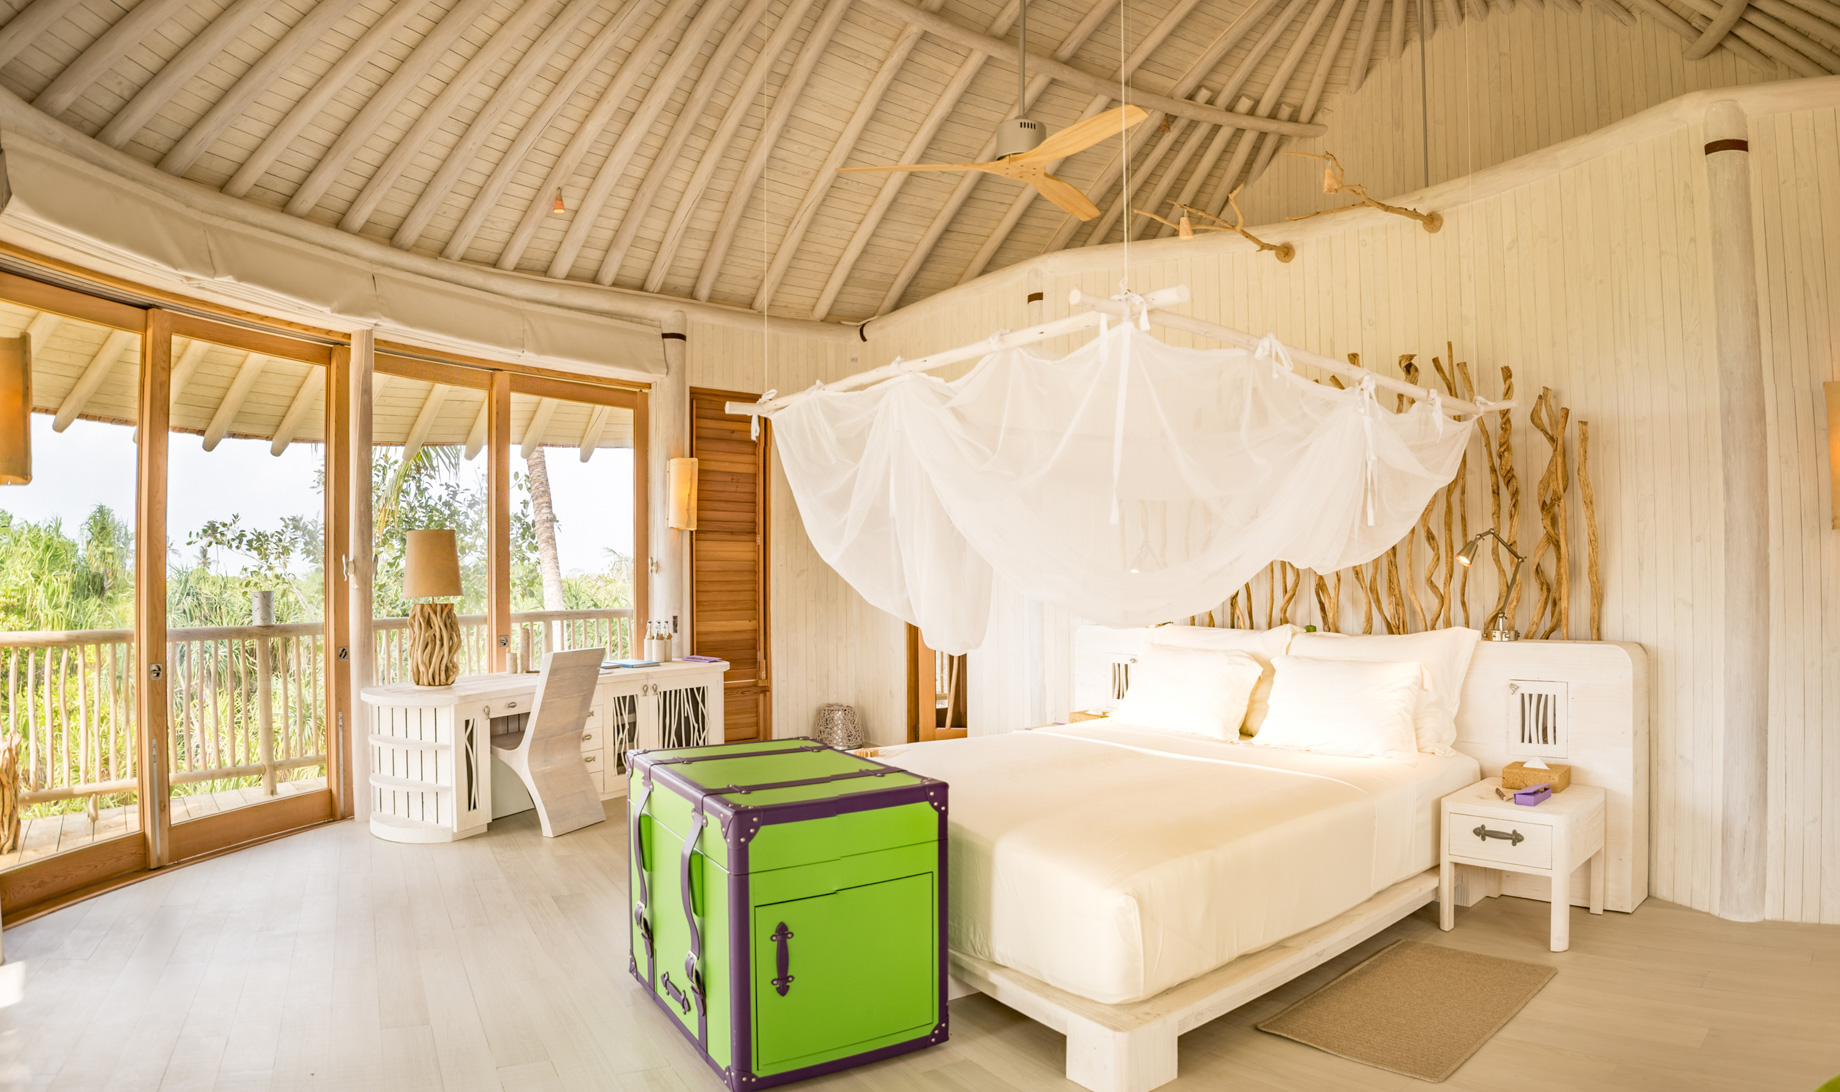 Soneva Jani Resort – Noonu Atoll, Medhufaru, Maldives – 3 Bedroom Island Reserve Villa Bedroom